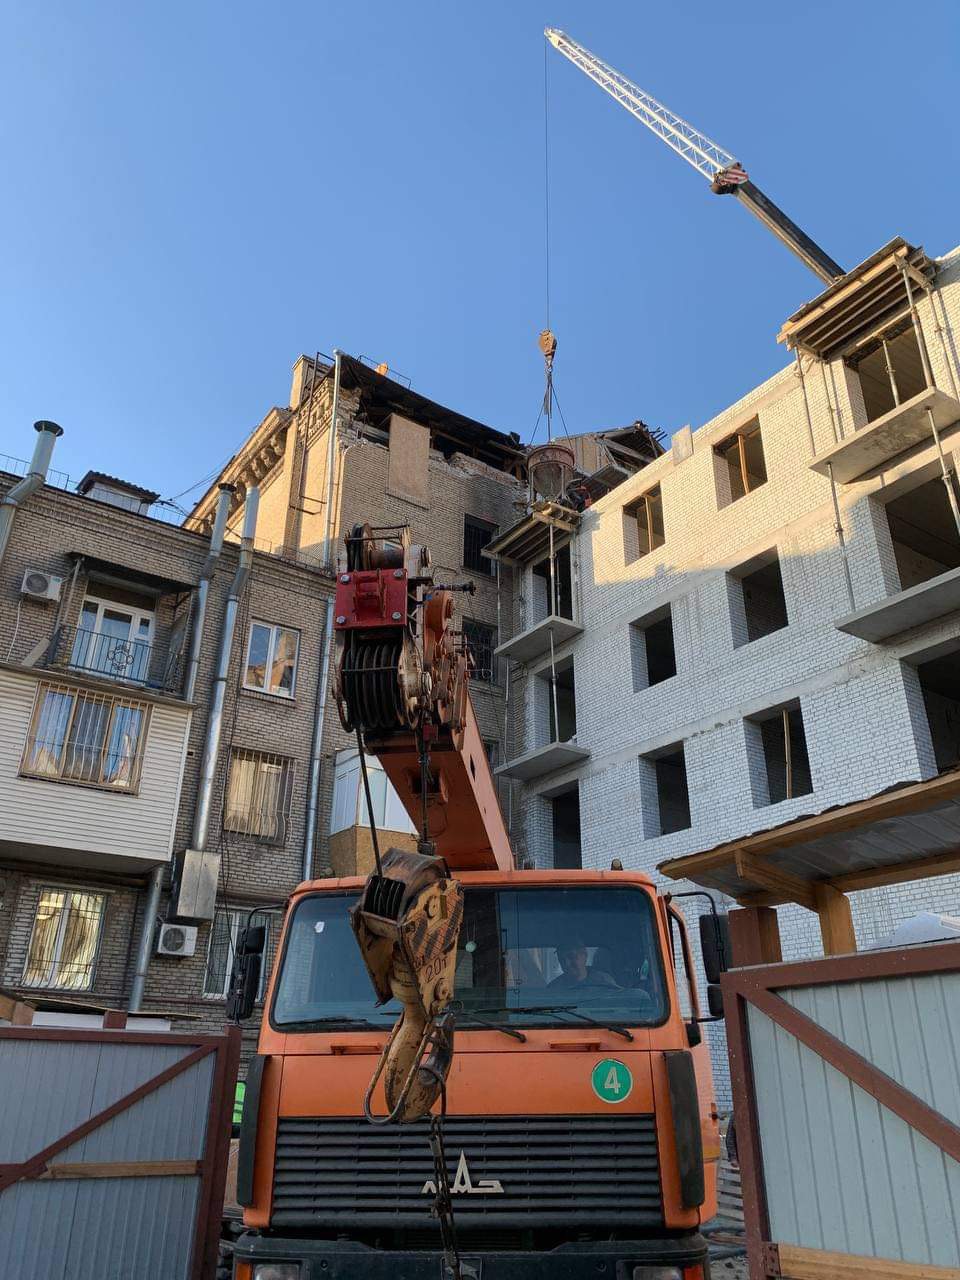 Будівництво останнього поверху розпочато: будівельники працюють вже на 5 поверсі будинку-памʼятки, що був понівечений російською ракетою рік тому